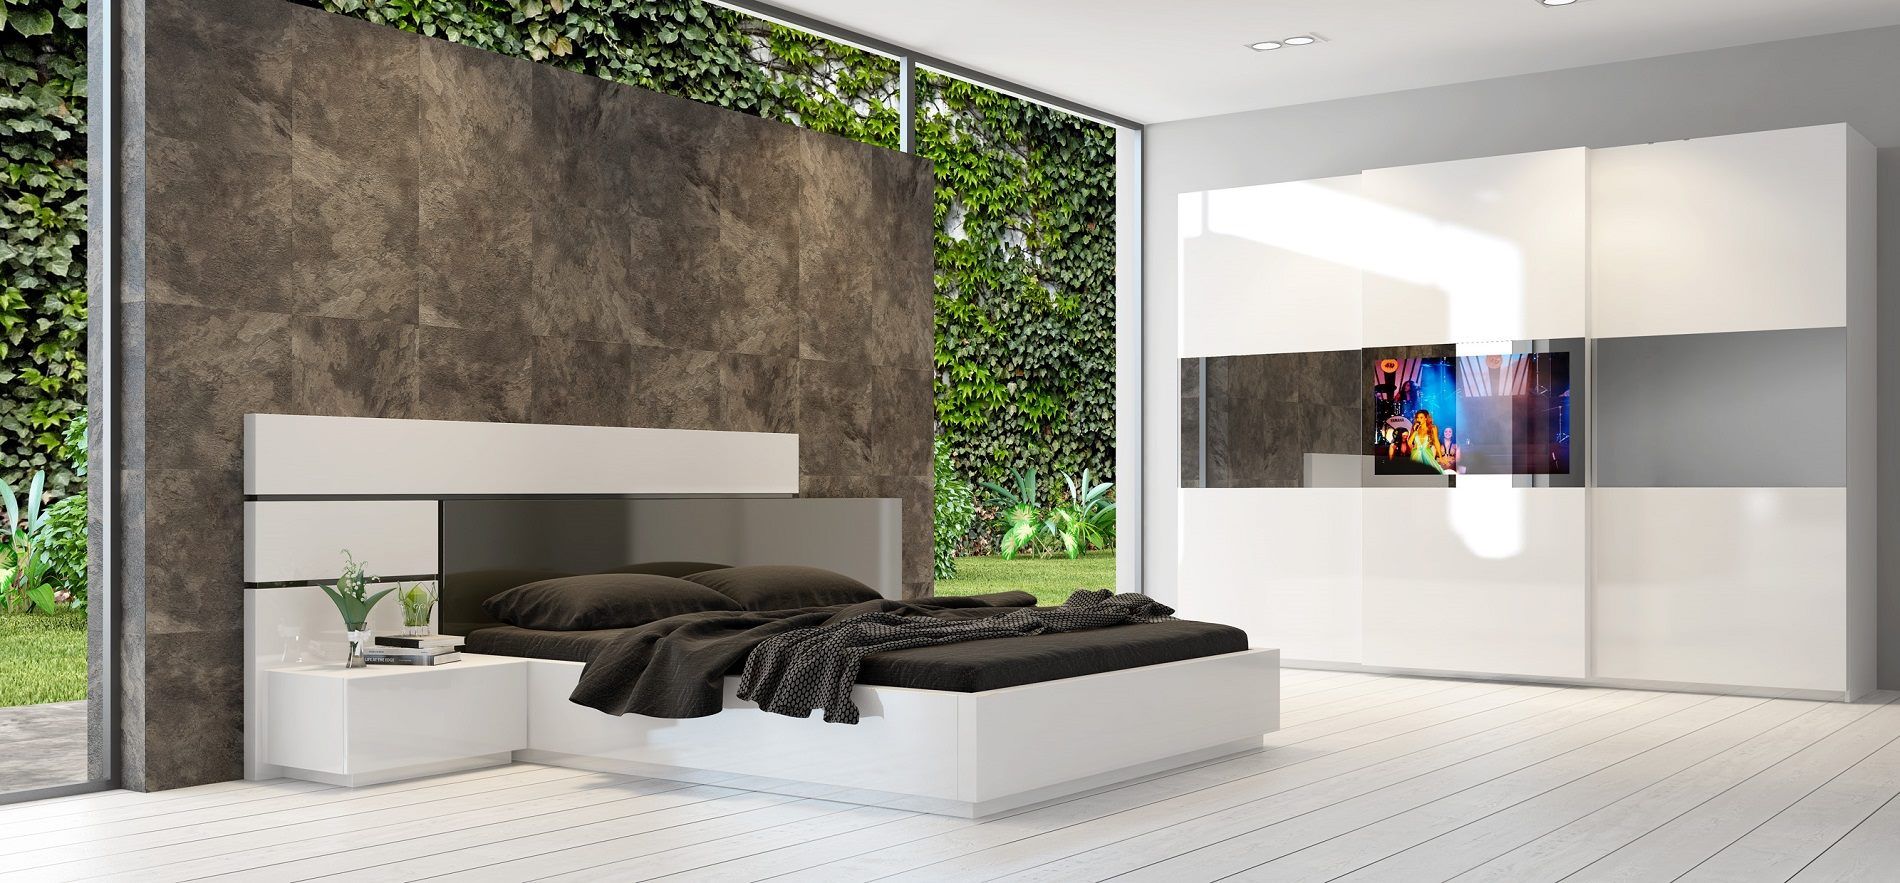 Eyfel , Mozza dİzayn Mozza dİzayn Modern style bedroom Beds & headboards